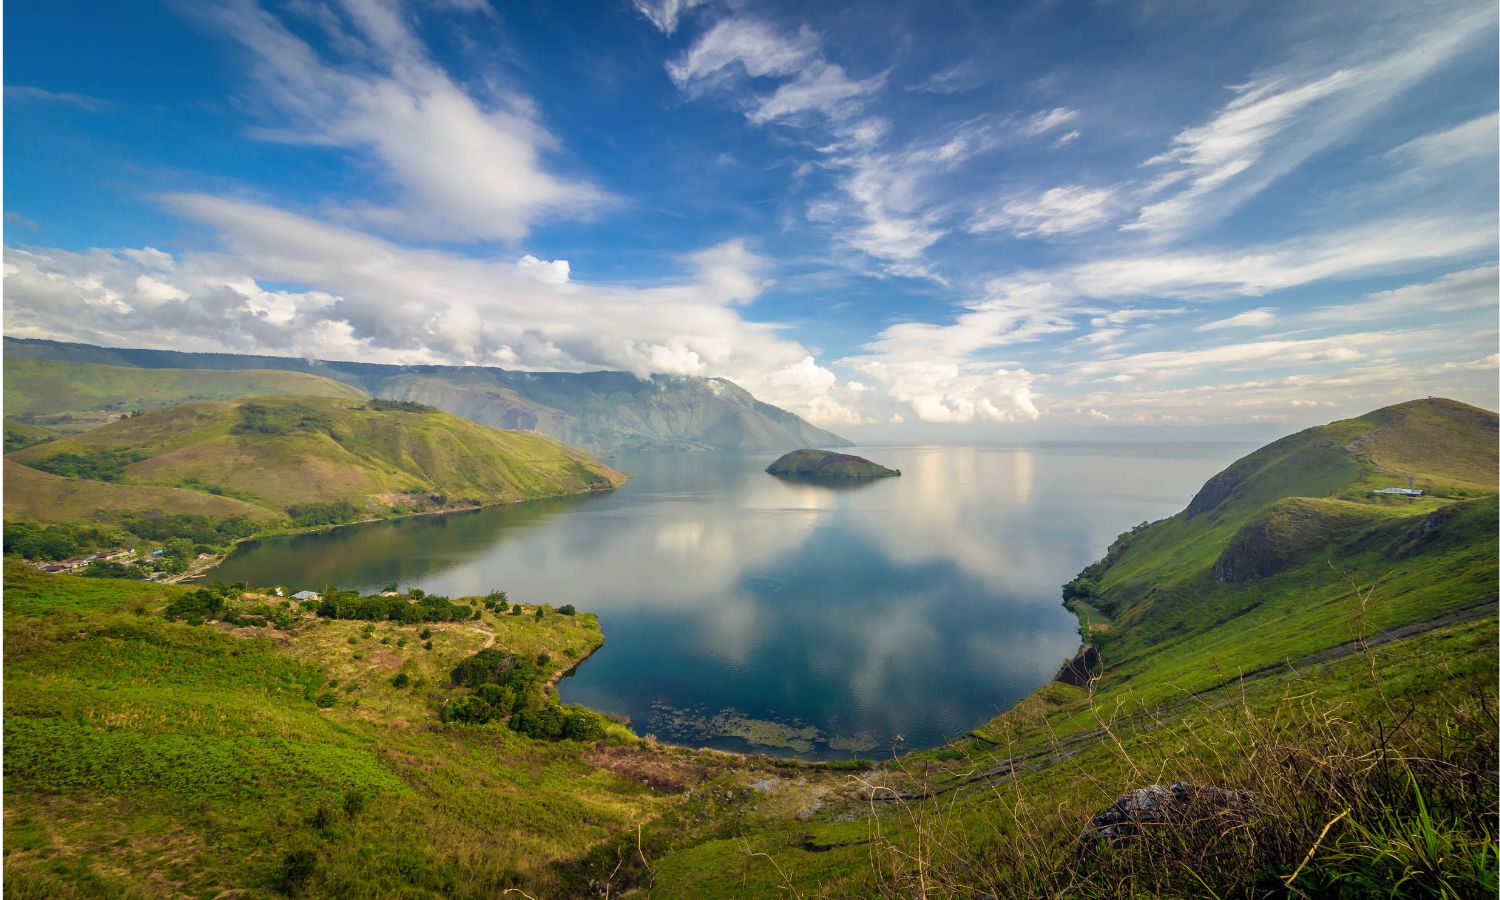 Sumatra Lake Toba